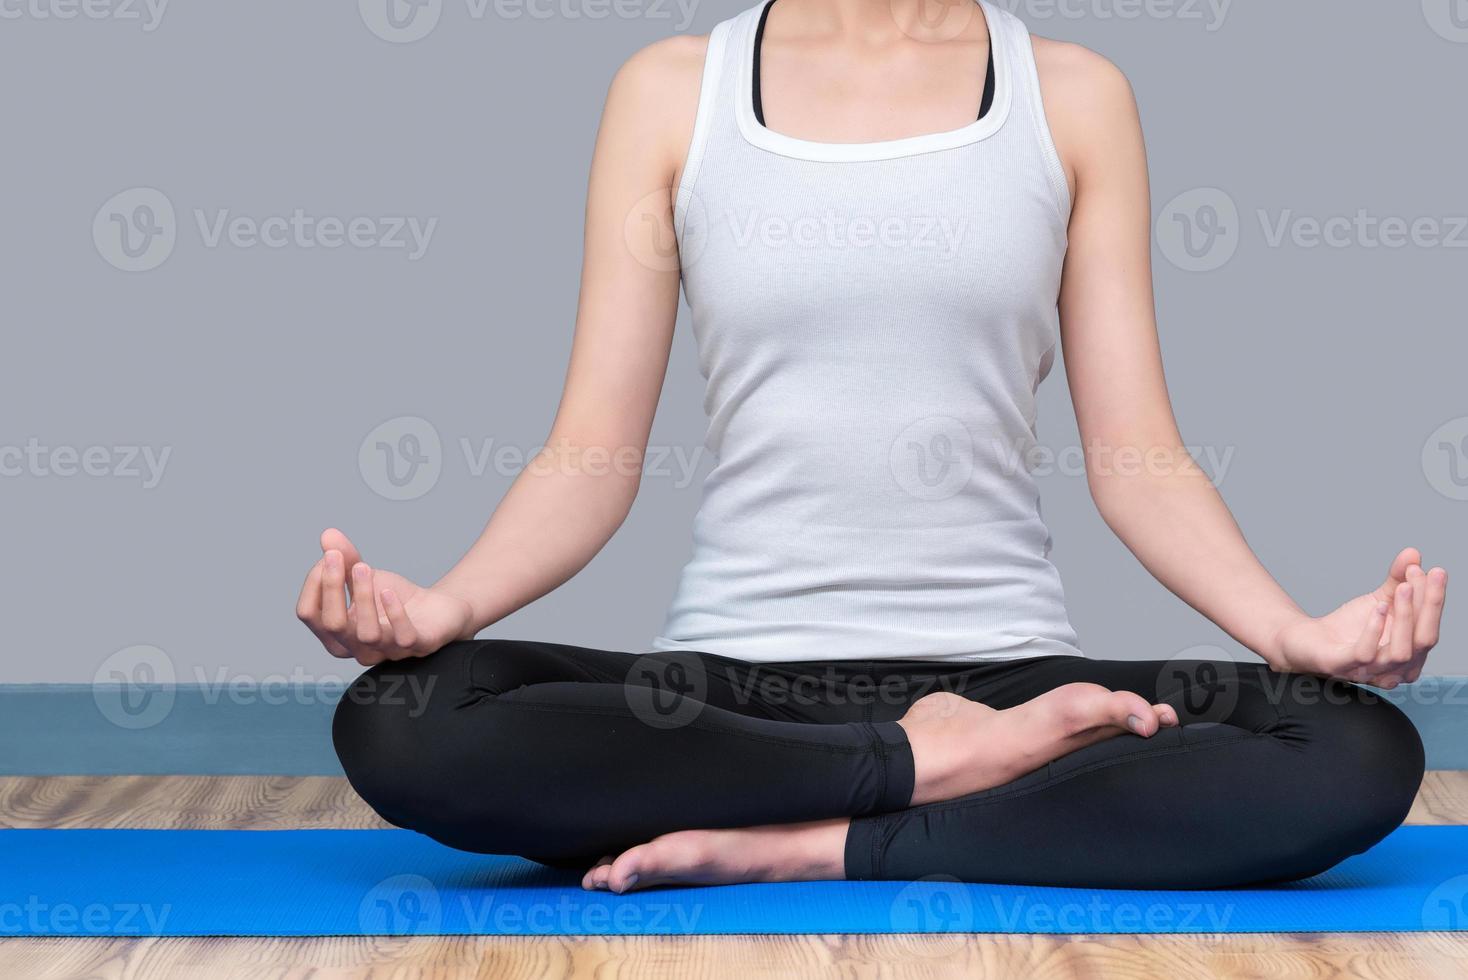 mujer joven mantenga la calma y medite mientras practica yoga para explorar la paz interior. el yoga y la meditación tienen buenos beneficios para la salud. concepto de fotografía para el deporte de yoga y estilo de vida saludable. foto